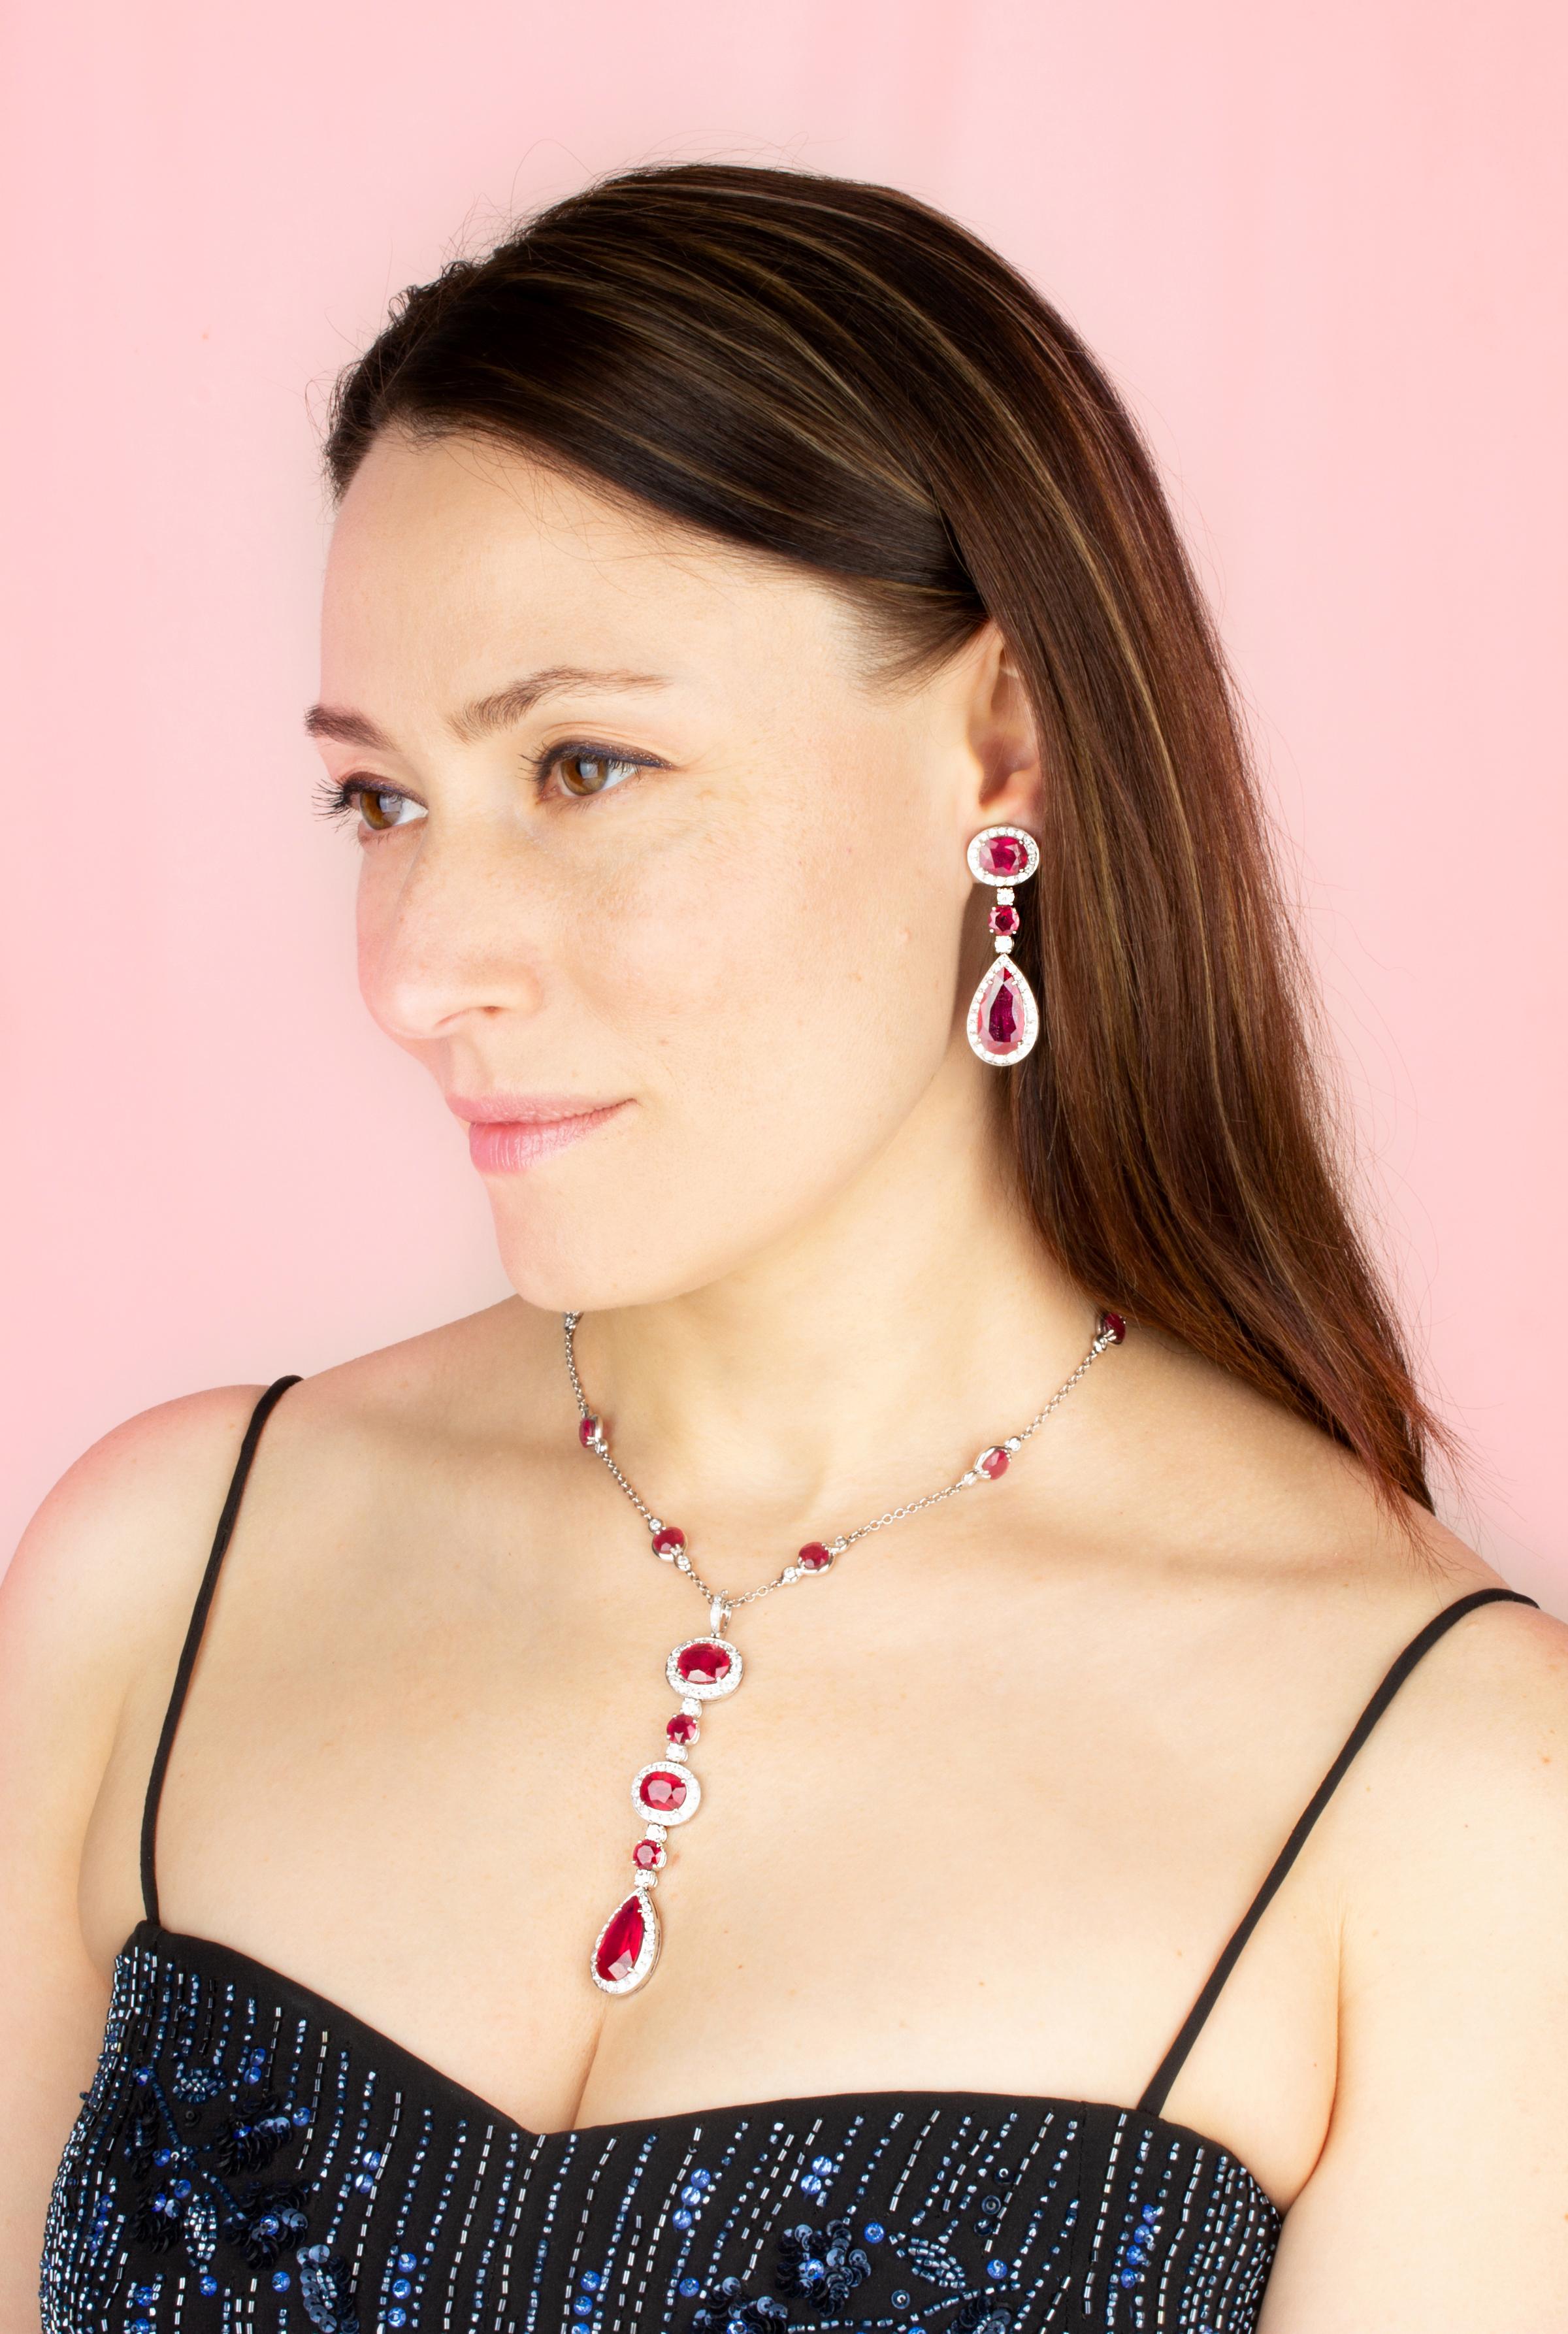 
L'ensemble collier et boucles d'oreilles rubis et diamants est constitué de rubis facettés de qualité homogène et brillante, spécialement taillés dans des diamants plus grands et plus chauds.  Mozambique à l'état brut pour obtenir les tailles